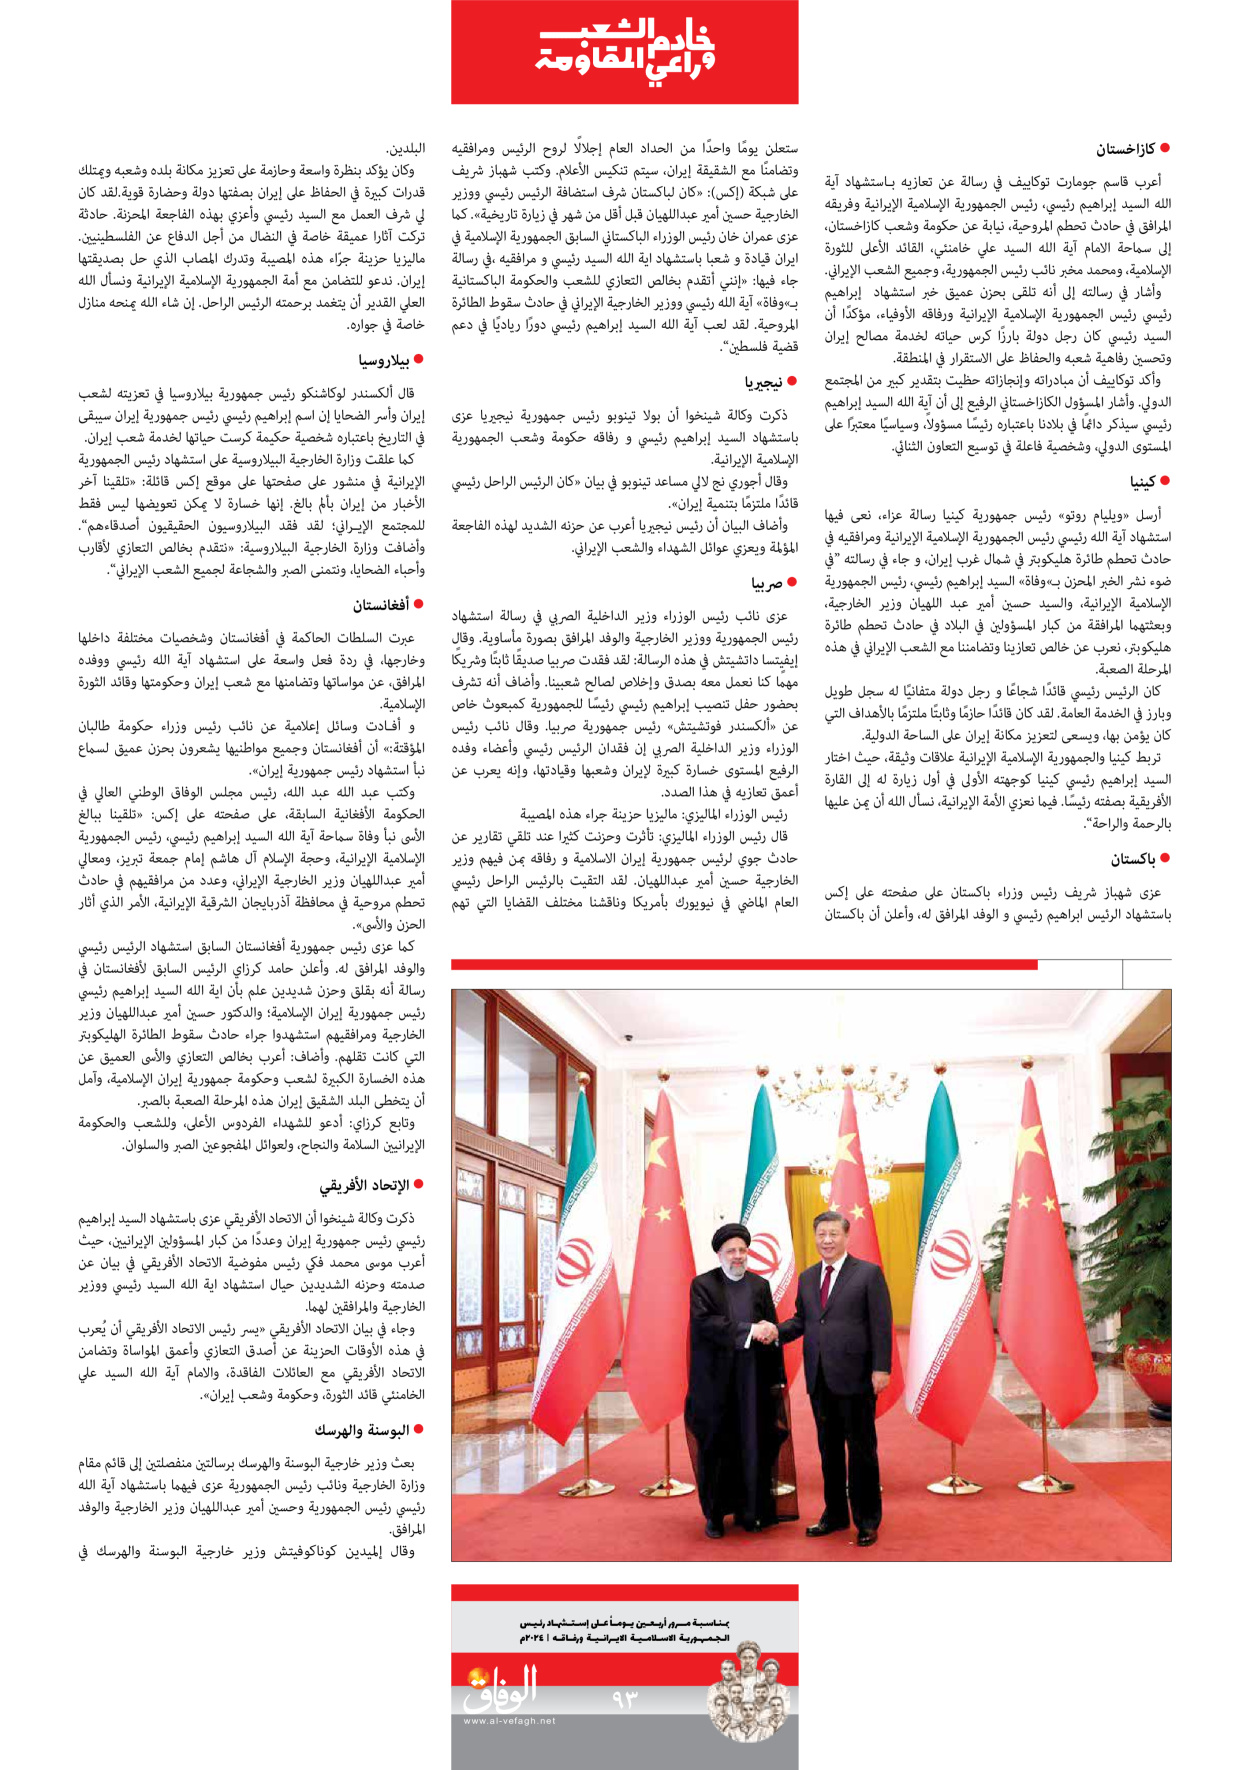 صحیفة ایران الدولیة الوفاق - ملحق ویژه نامه چهلم شهید رییسی - ٢٩ يونيو ٢٠٢٤ - الصفحة ۹۲